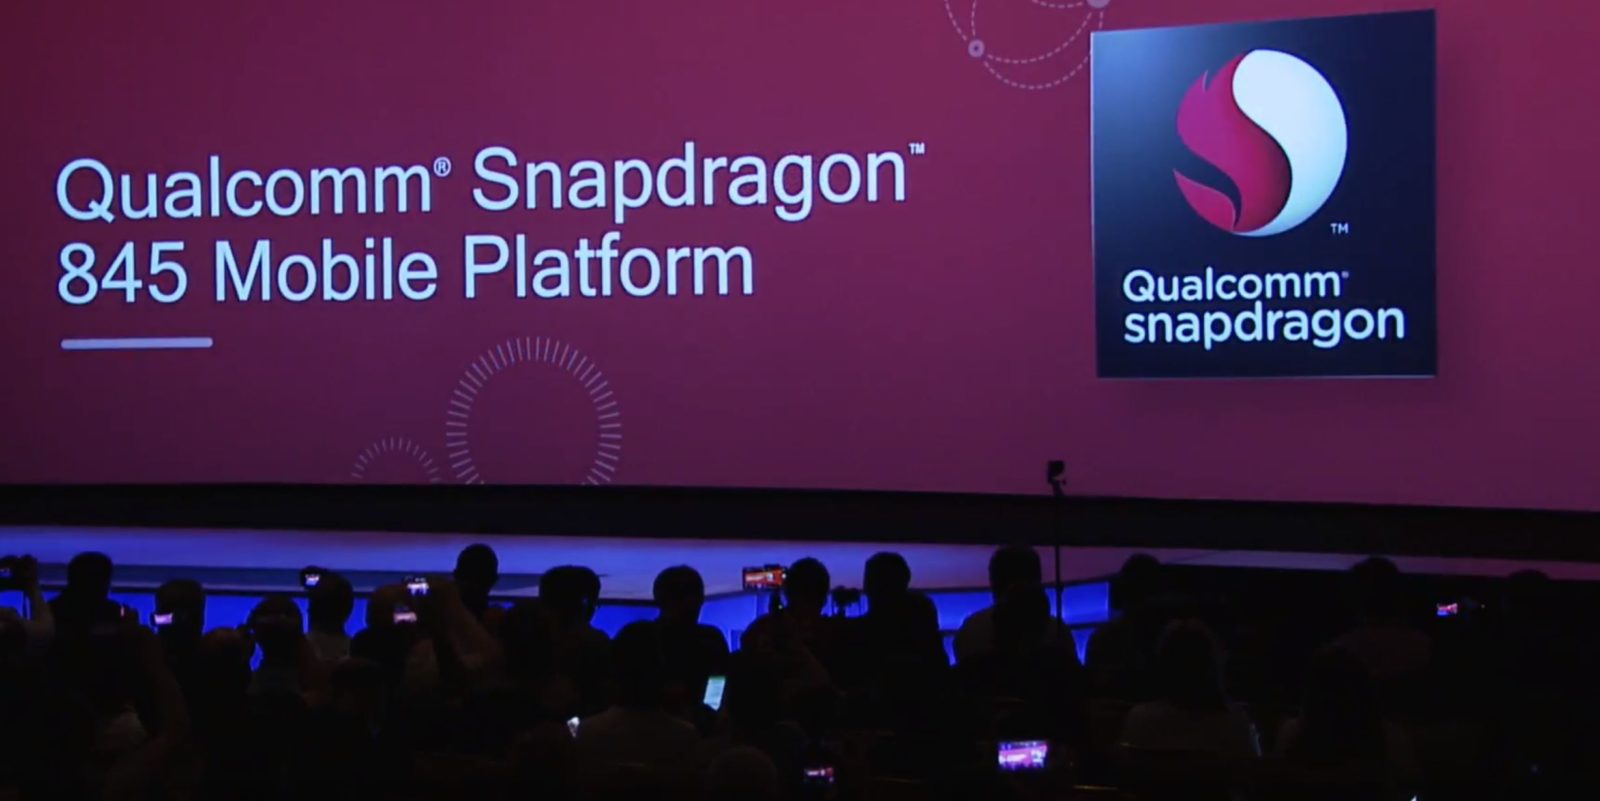 کوالکام مشخصات کامل Snapdragon 845 را اعلام می کند